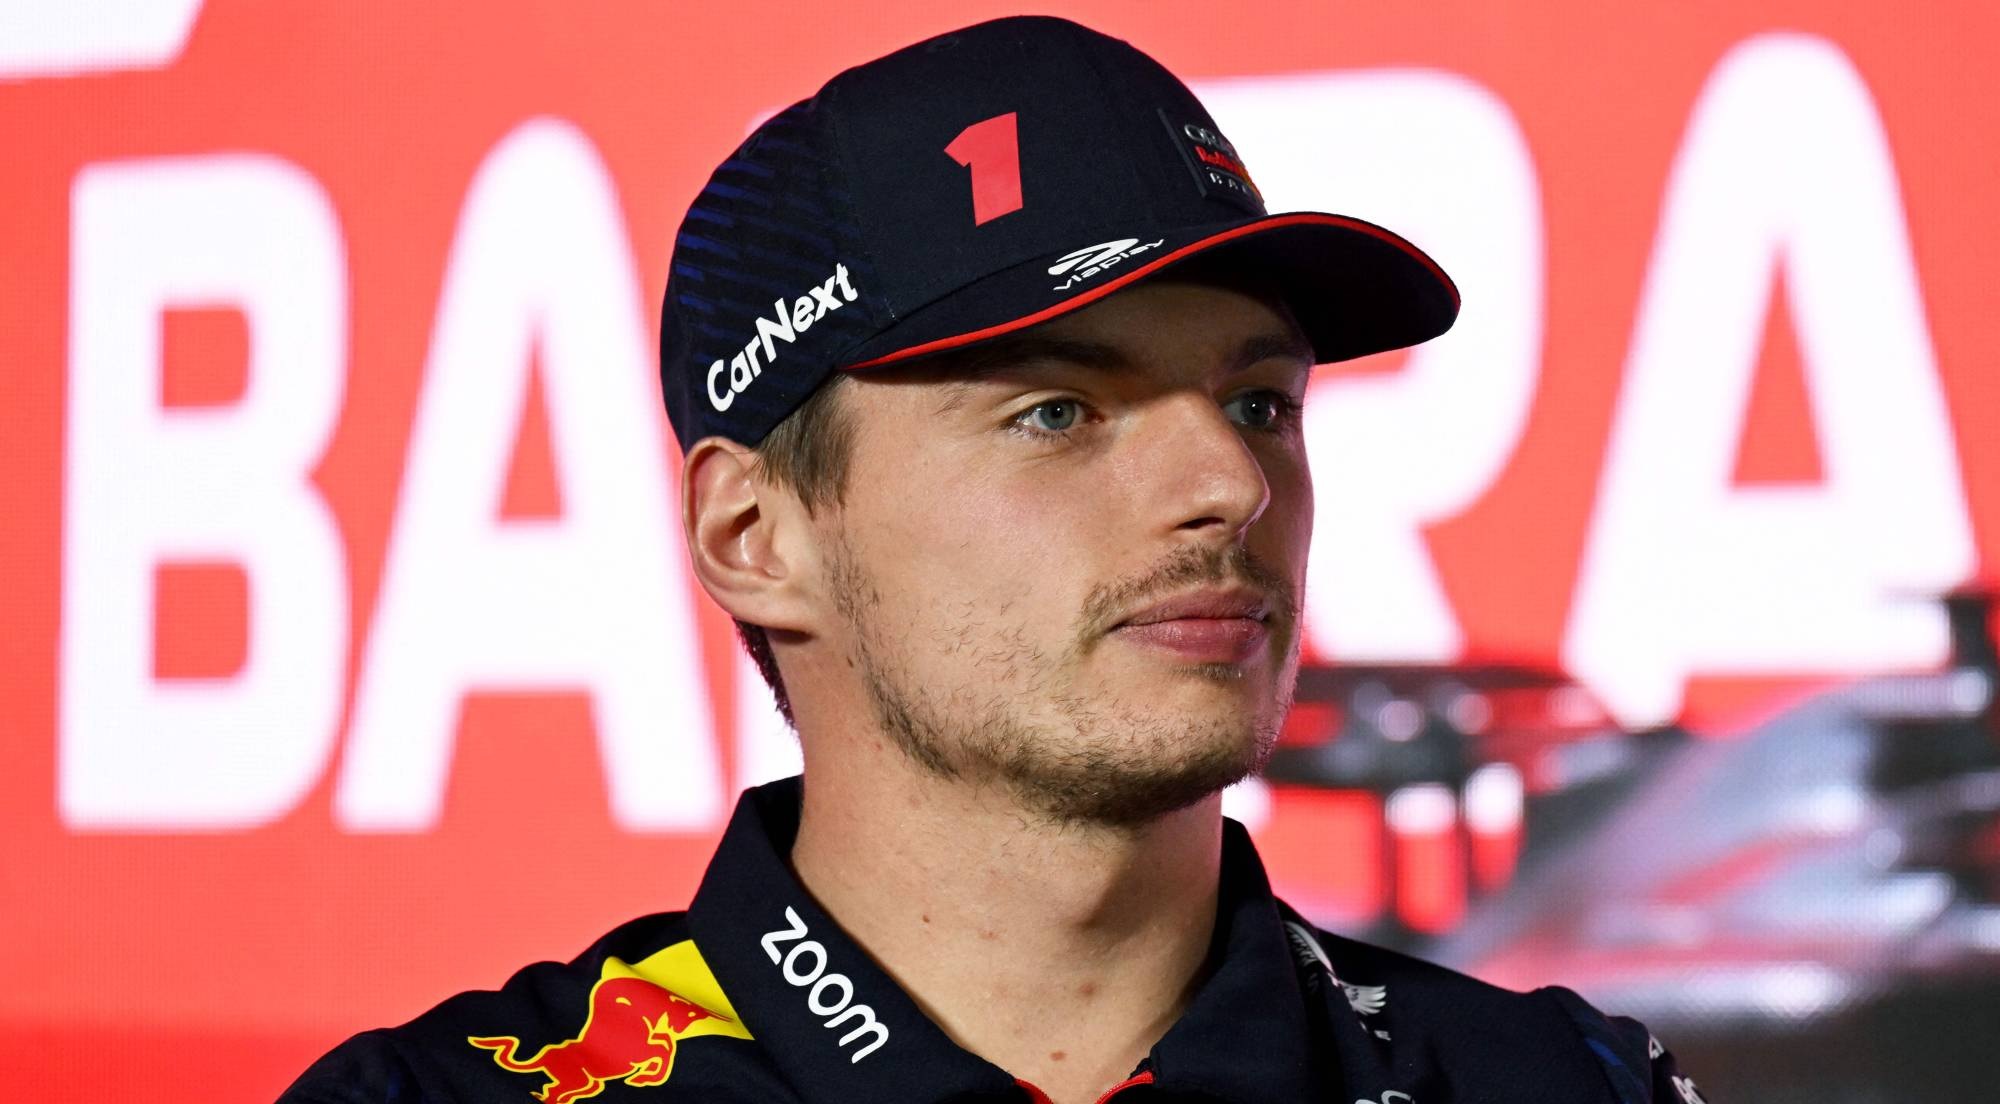 Vidéo. Formule 1: Max Verstappen en pole du Grand Prix de Monaco